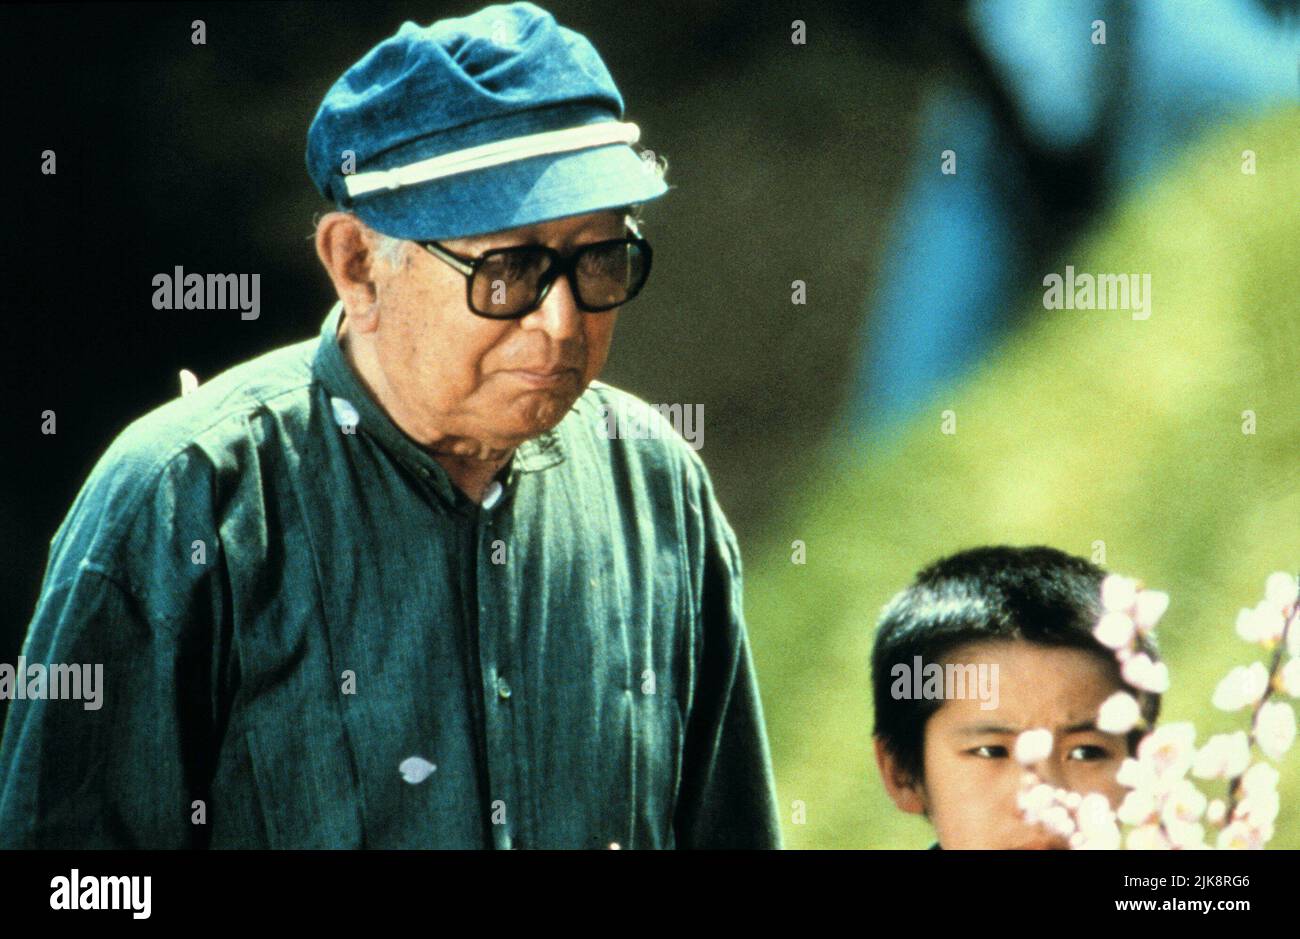 Akira Kurosawa Film: Dreams; Akira Kurosawa'S Dreams (Yume) JP/USA 1990, Regie: Akira Kurosawa 10 May 1990 **WARNUNG** Dieses Foto ist nur für den redaktionellen Gebrauch bestimmt und unterliegt dem Copyright von WARNER BROS. Und/oder des Fotografen, der von der Film- oder Produktionsfirma beauftragt wurde und nur durch Publikationen im Zusammenhang mit der Bewerbung des oben genannten Films reproduziert werden kann. Eine obligatorische Gutschrift an WARNER BROS. Ist erforderlich. Der Fotograf sollte auch bei Bekanntwerden des Fotos gutgeschrieben werden. Ohne schriftliche Genehmigung der Film Company kann keine kommerzielle Nutzung gewährt werden. Stockfoto